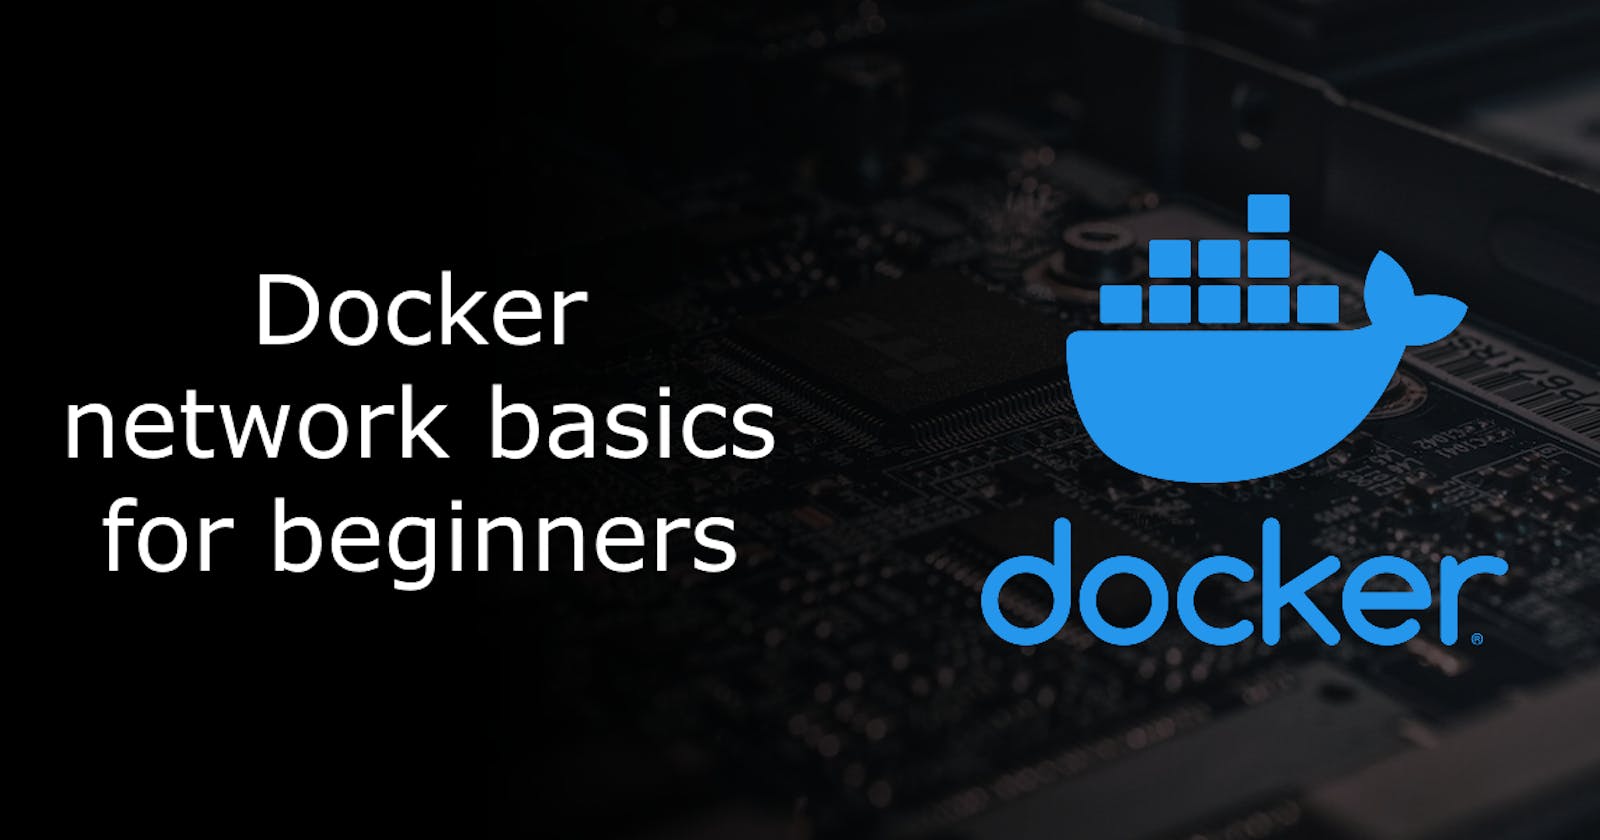 Docker network basics for beginners